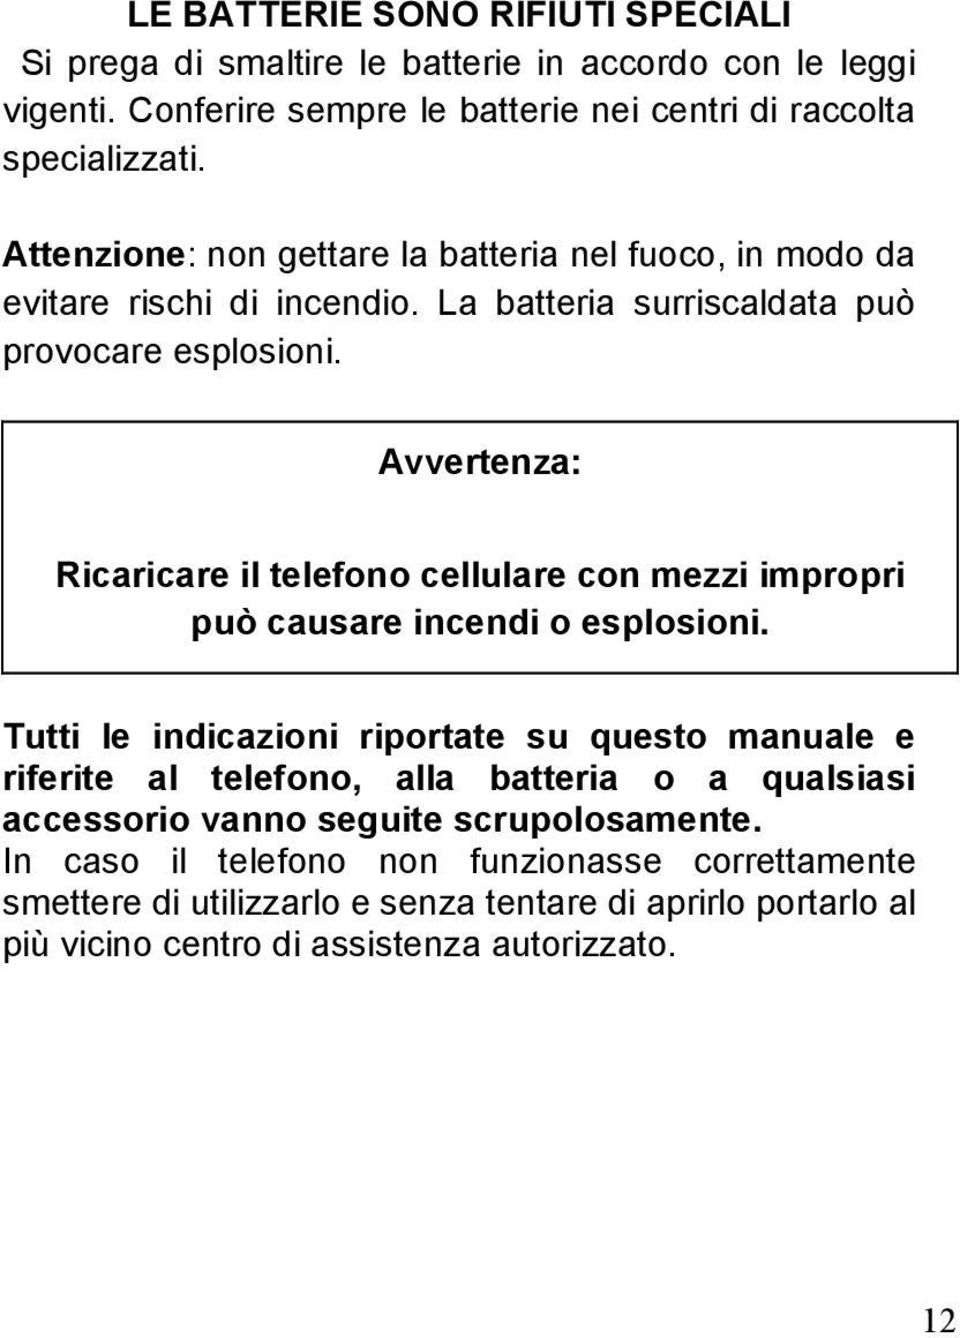 Avvertenza: Ricaricare il telefono cellulare con mezzi impropri può causare incendi o esplosioni.